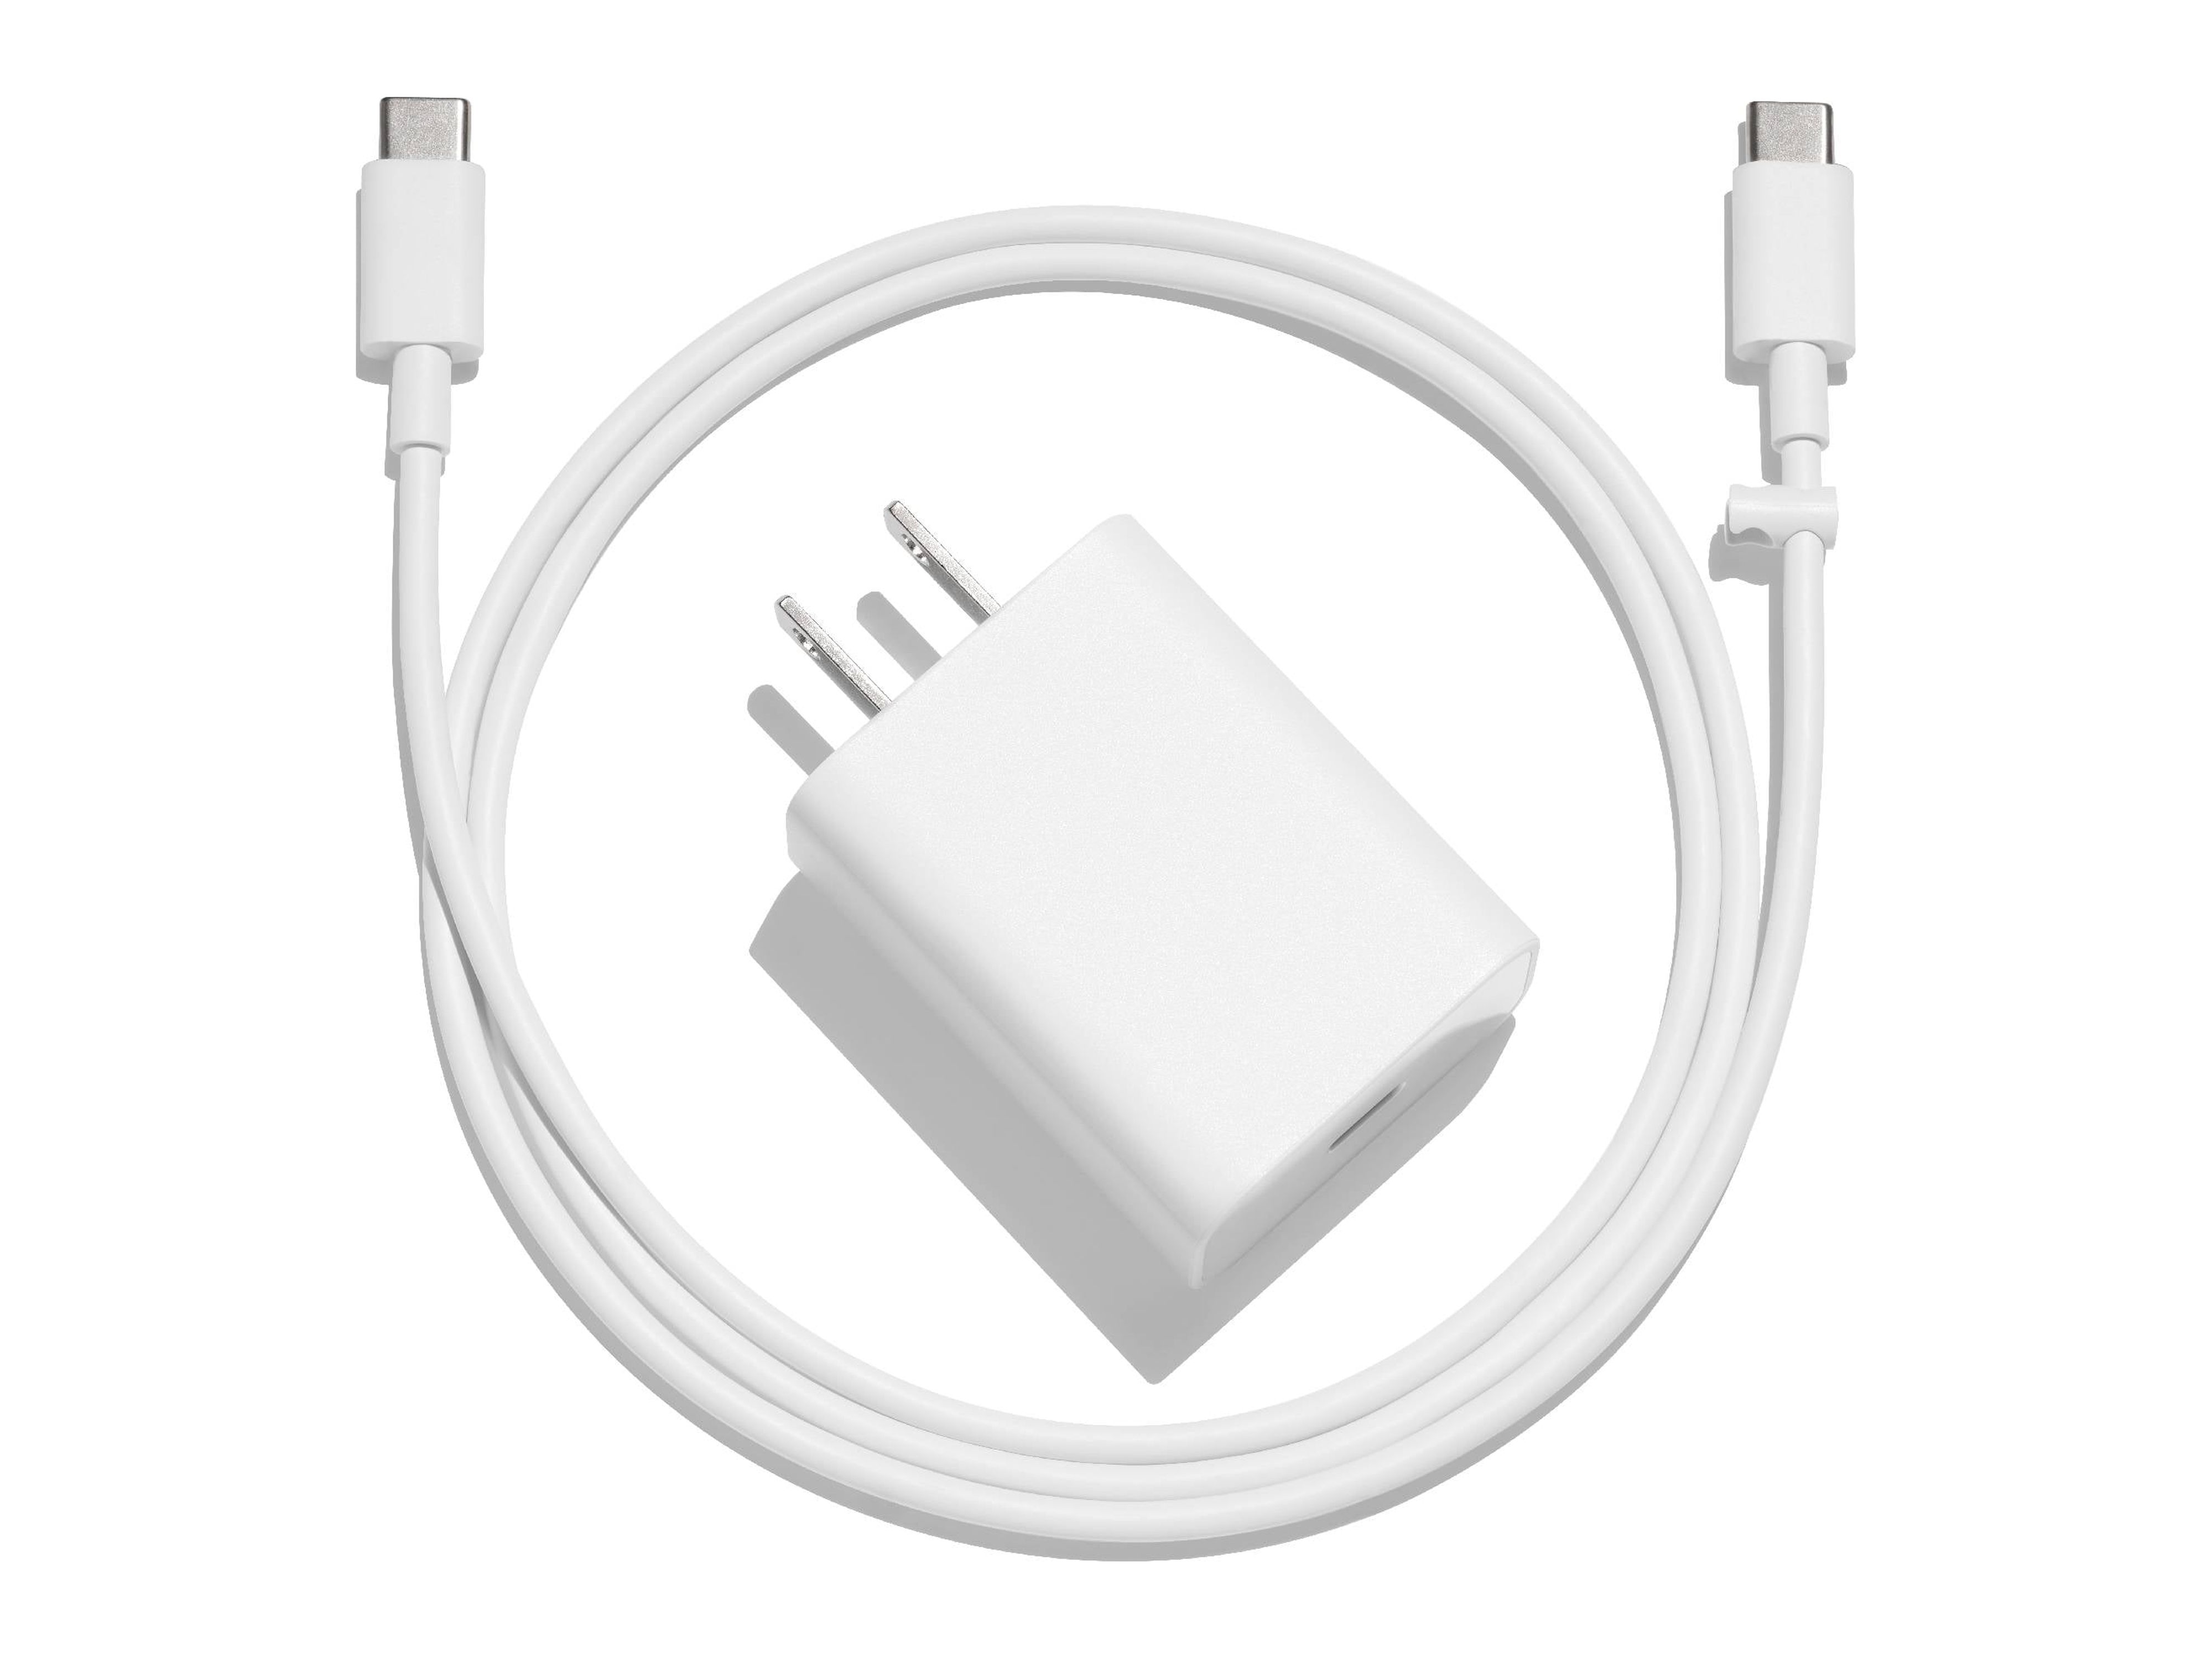 Google - Power adapter - 18 Watt (24 pin USB-C) - white - image 1 of 9